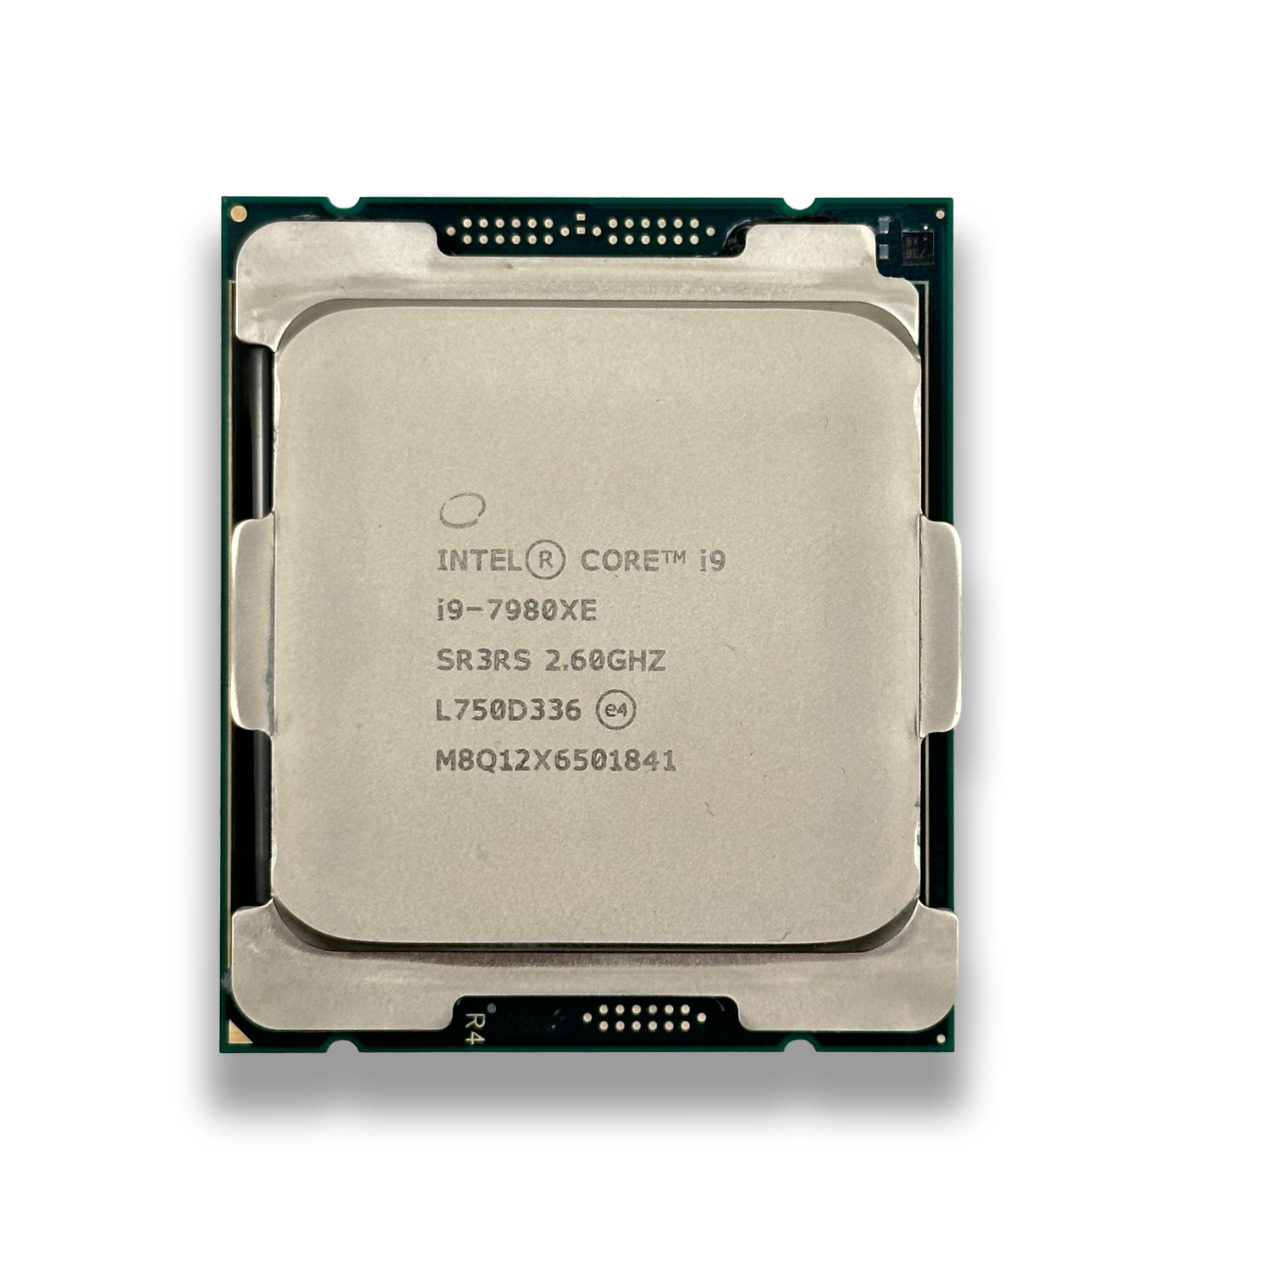 Delidded Intel Core i9-7980XE Processor 2.6 GHz 18-Core CPU 